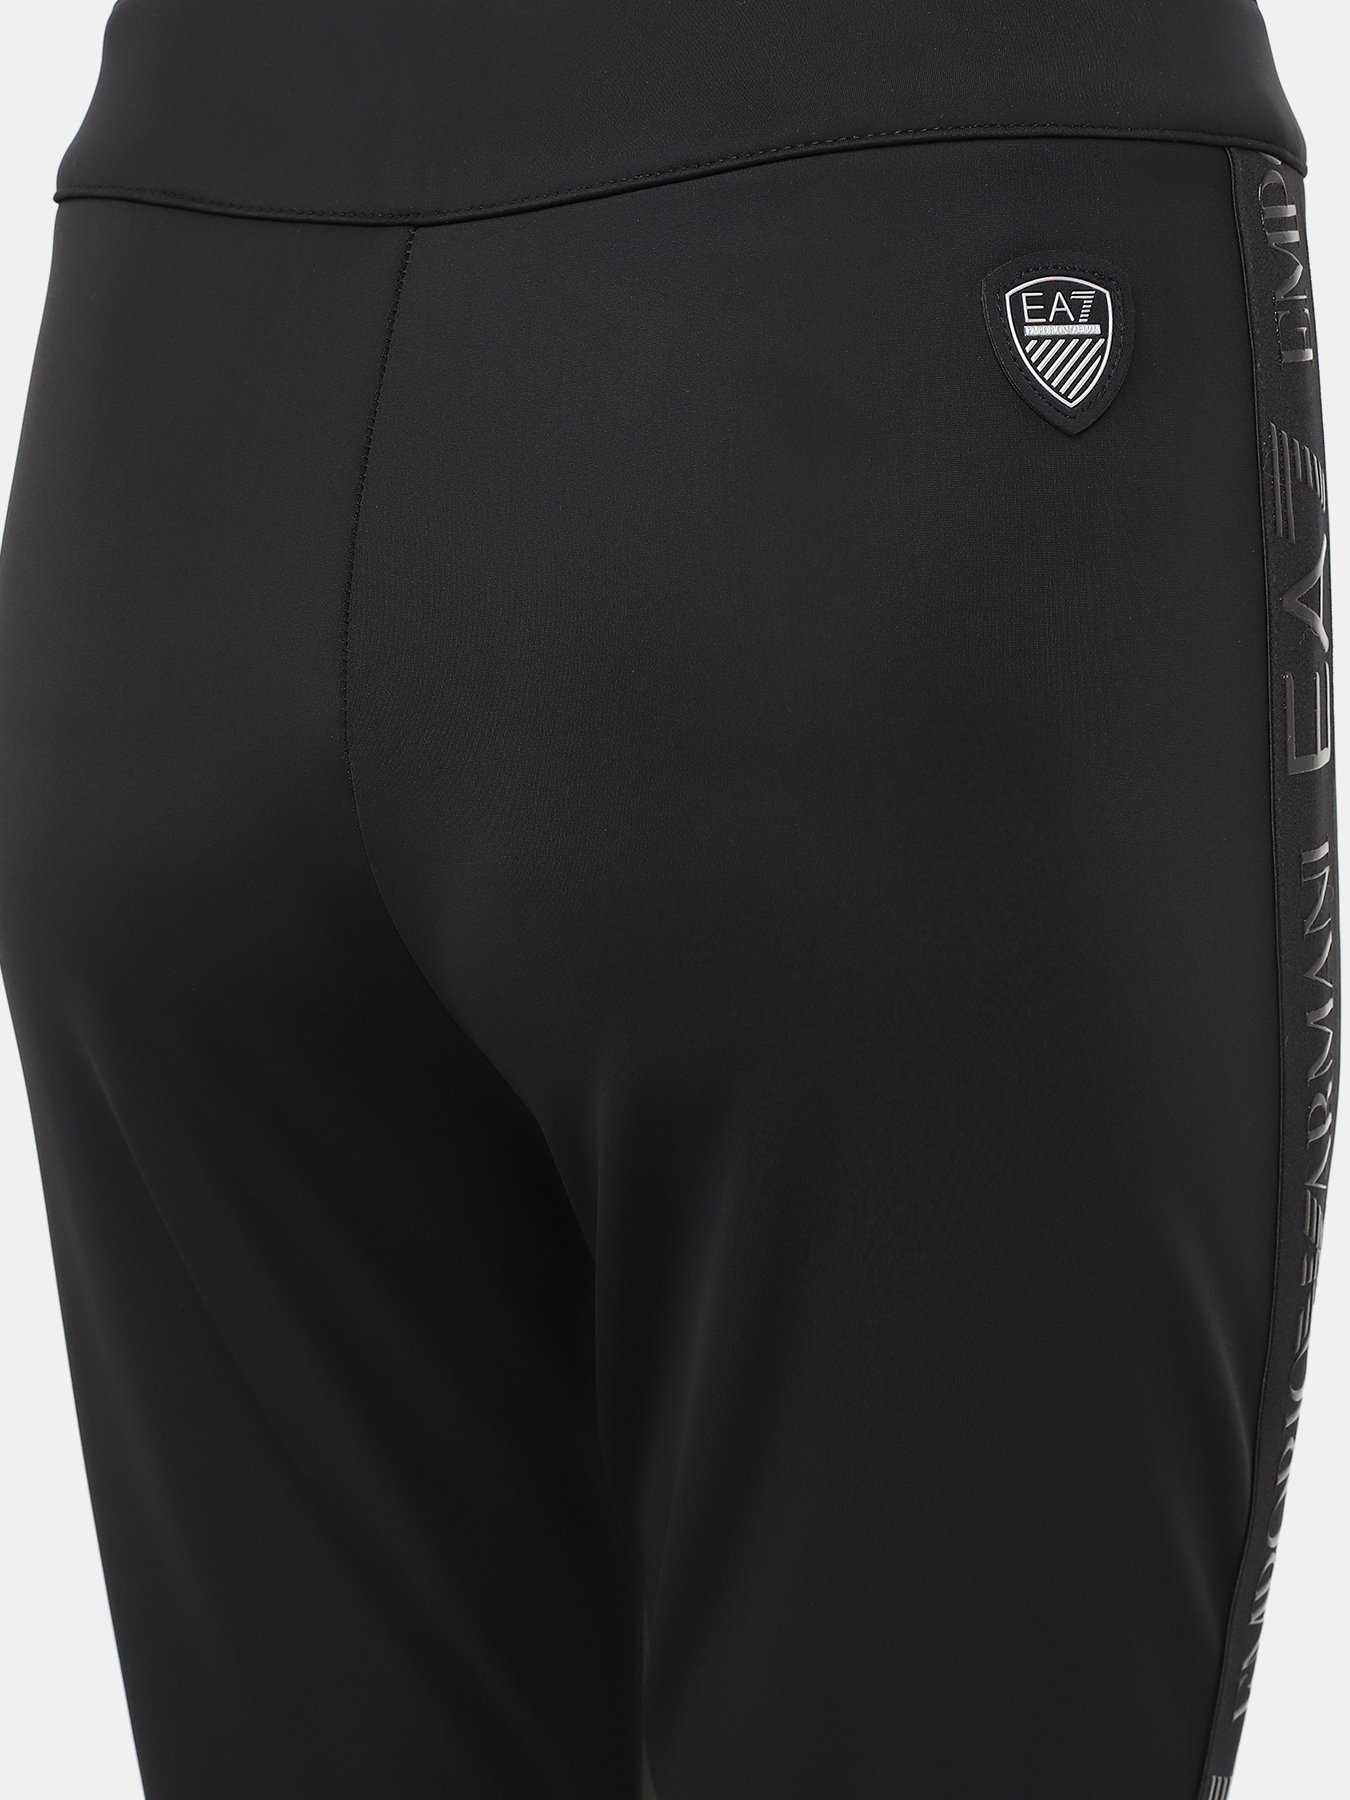 Спортивные брюки EA7 Emporio Armani 423004-042, цвет черный, размер 42-44 - фото 5